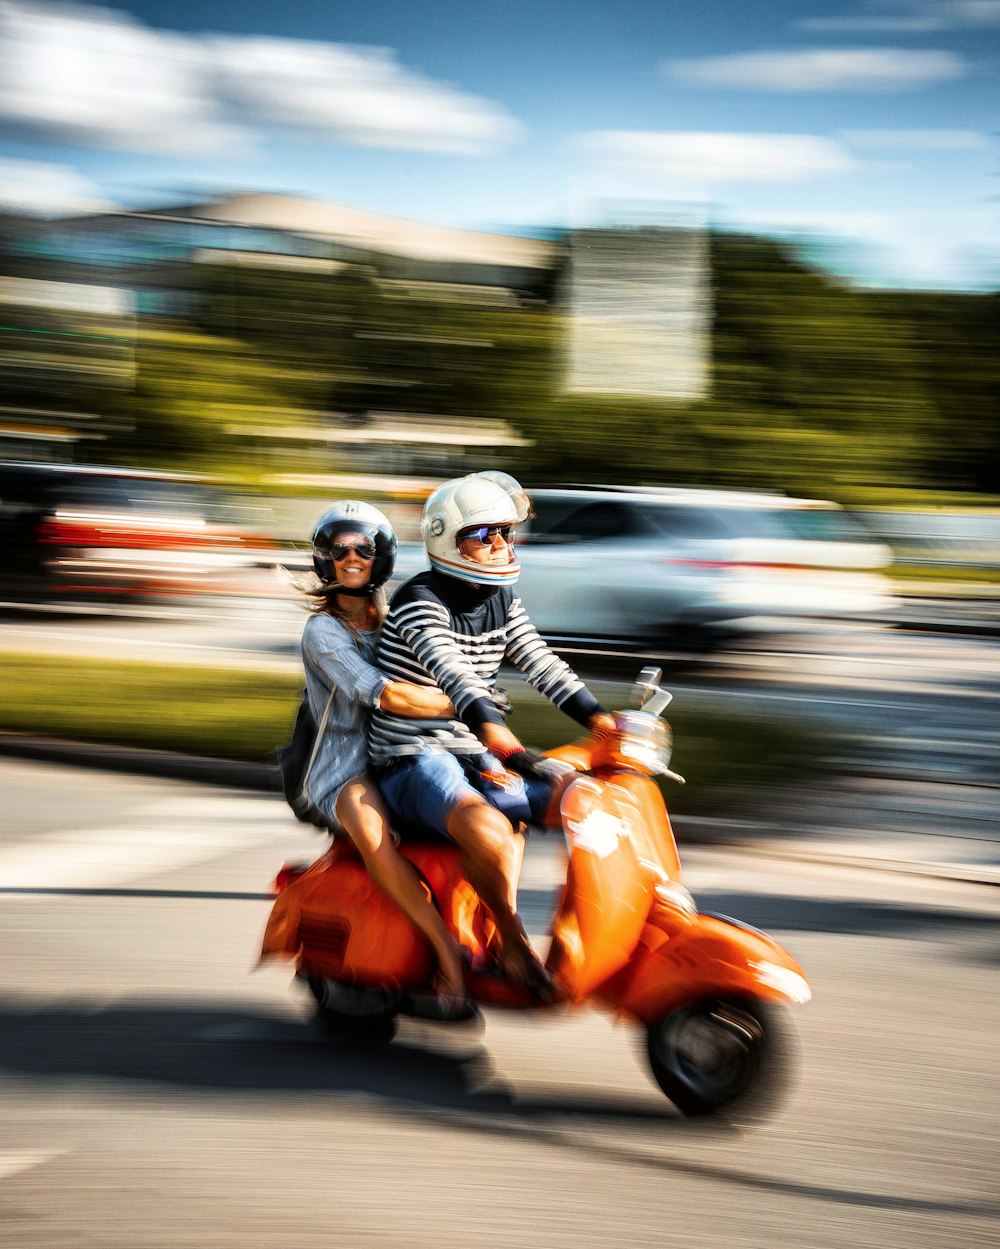 homme en veste noire conduisant un scooter orange sur la route pendant la journée